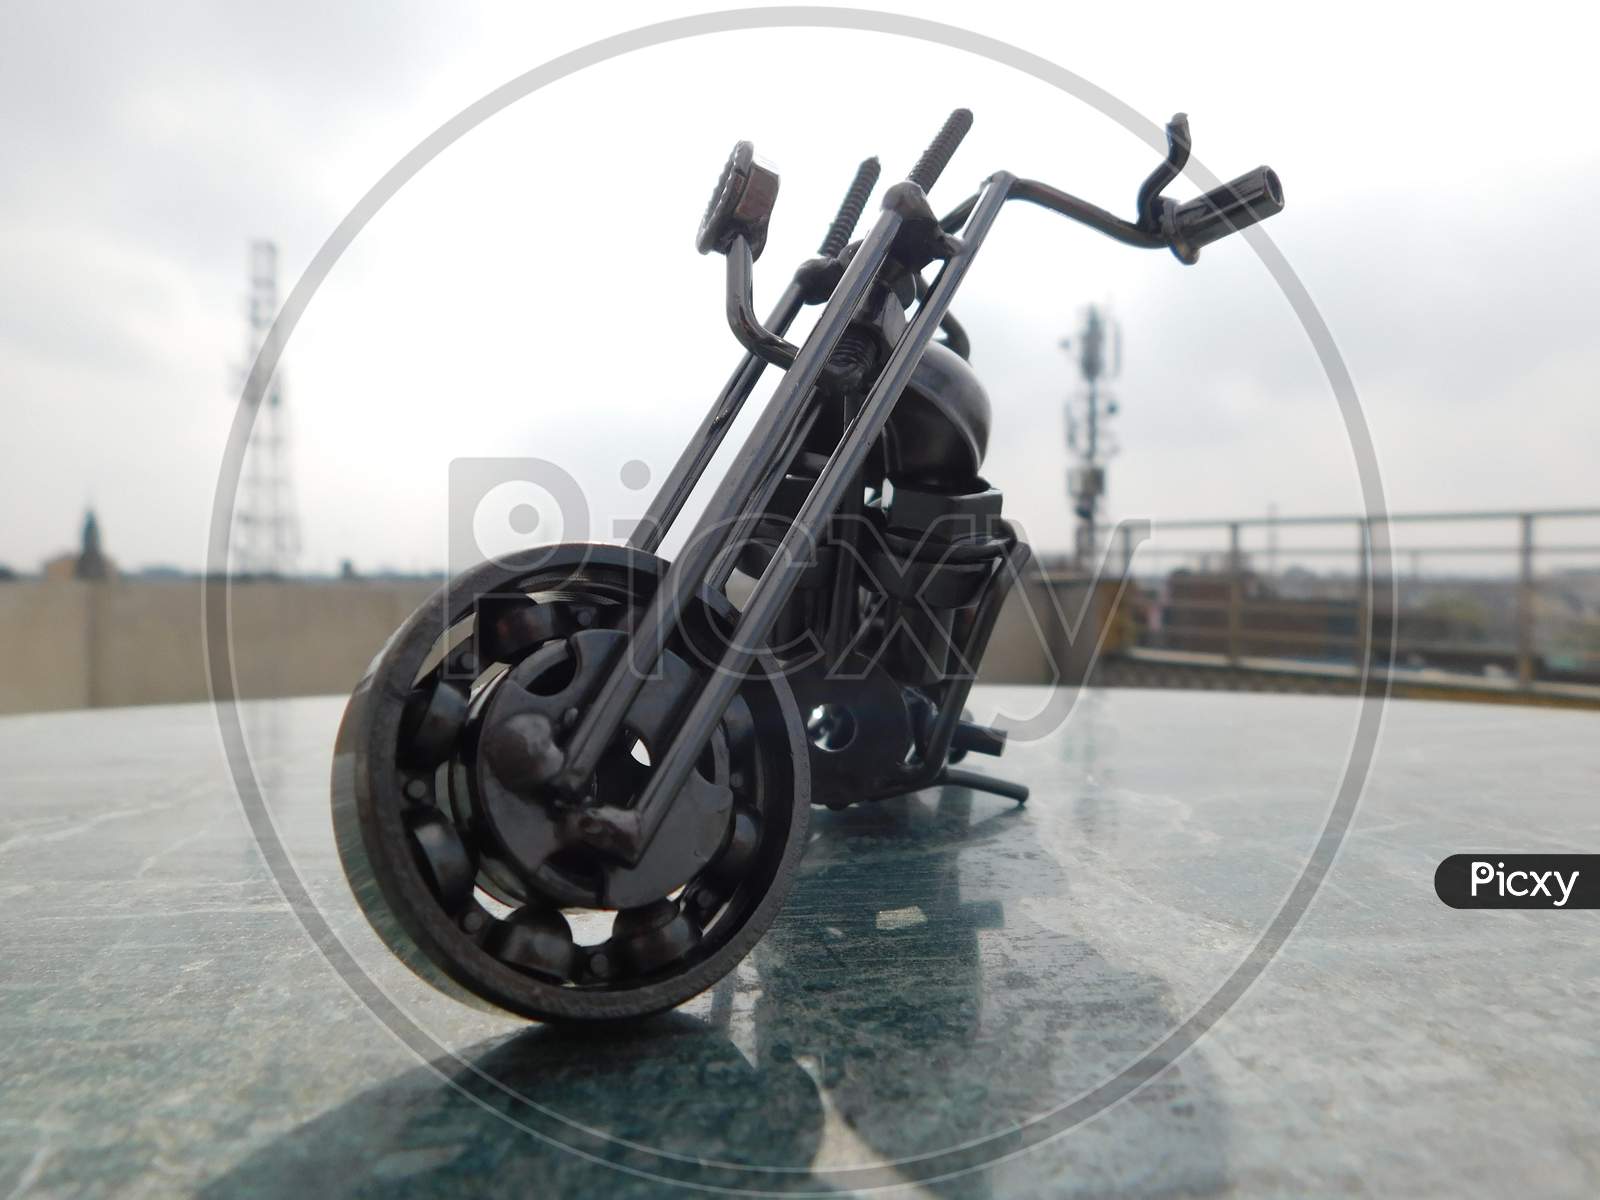 mettalic chopper bike